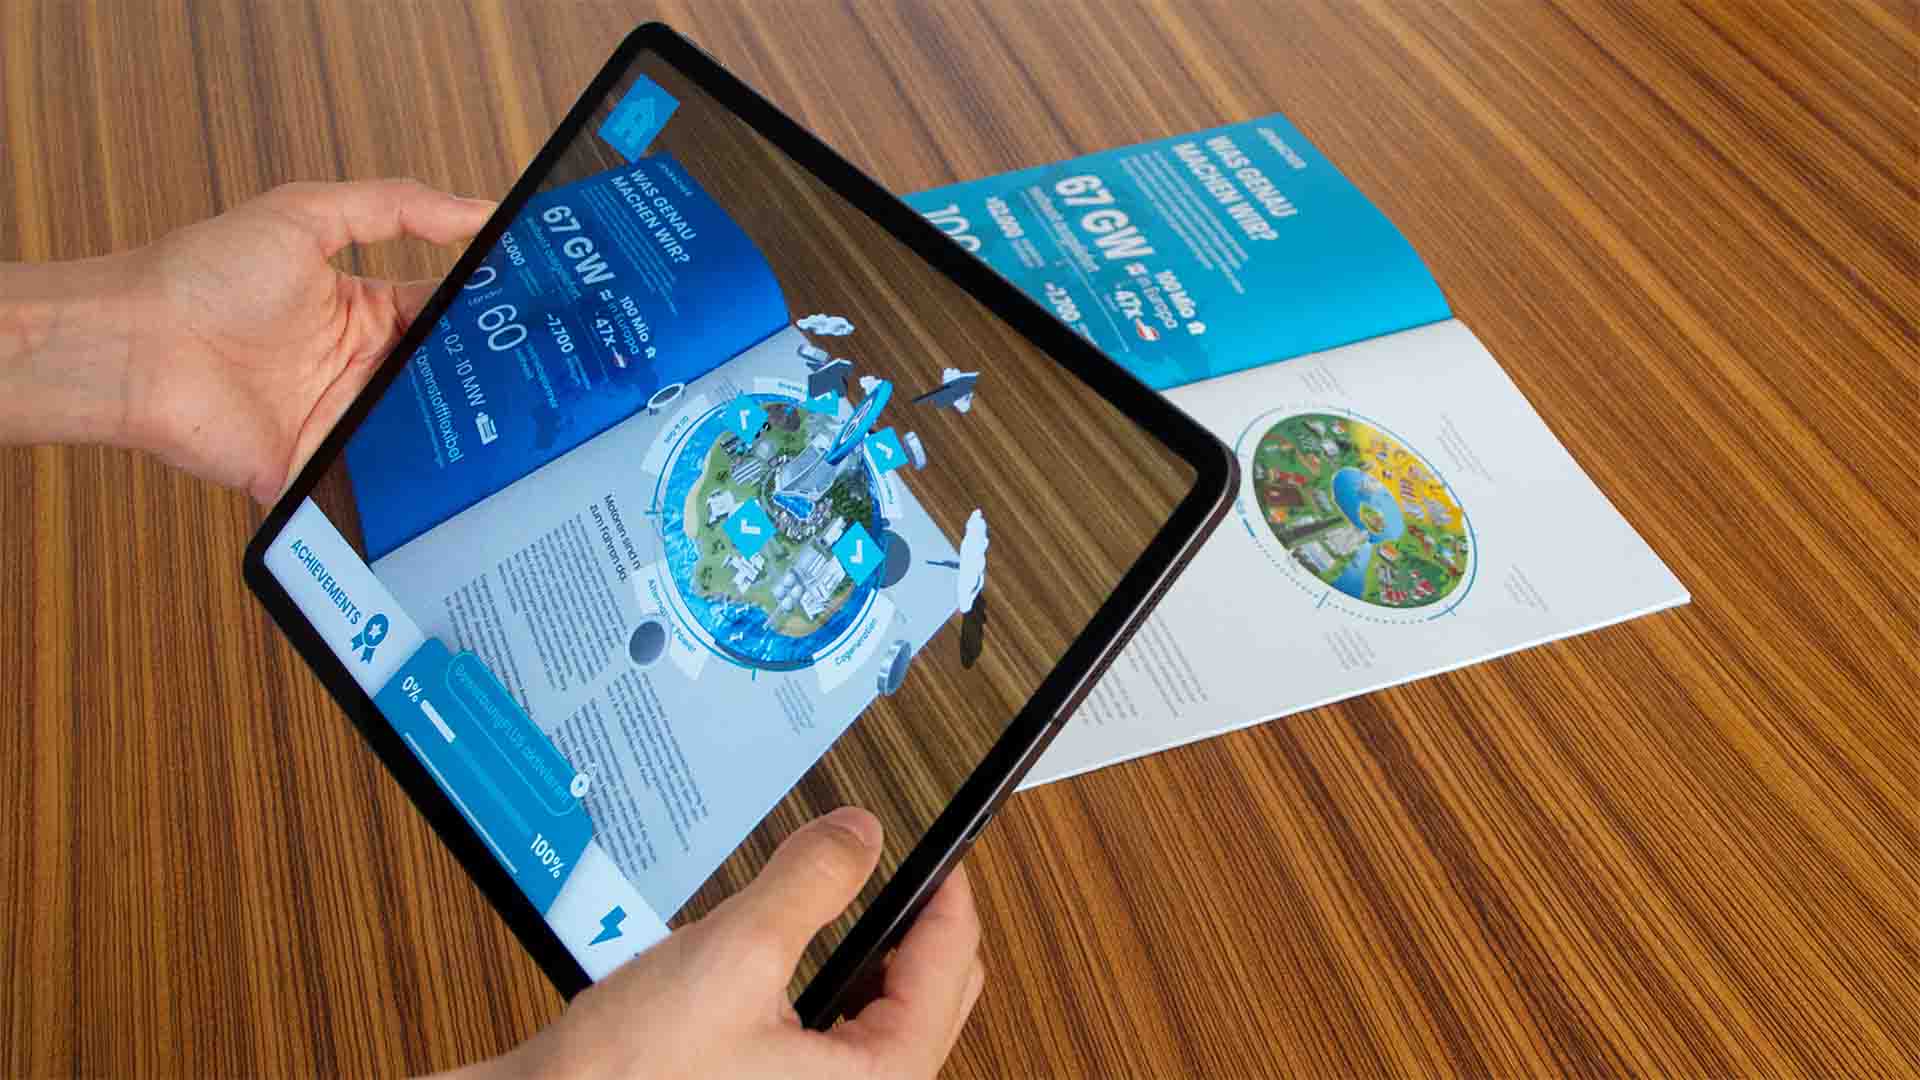 Die Augmented Reality App „Lehre bei Innio“ erweitert den gedruckten Lehrlingsfolder mit virtuellen Inhalten, die nach und nach freigeschaltet werden.